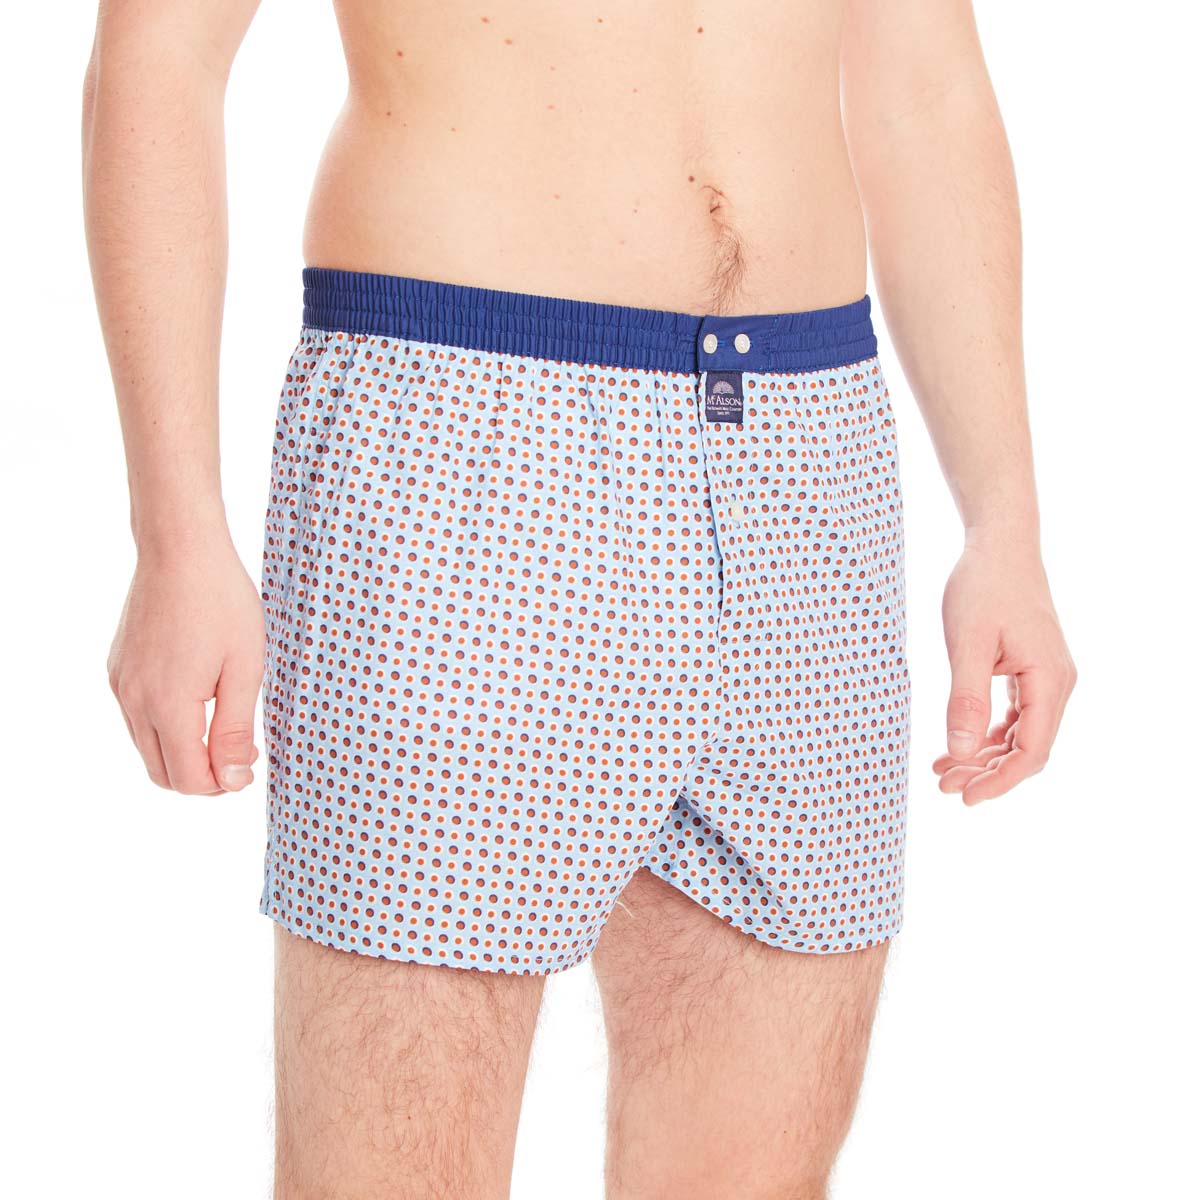 m4621-mcalson-underwear-zij